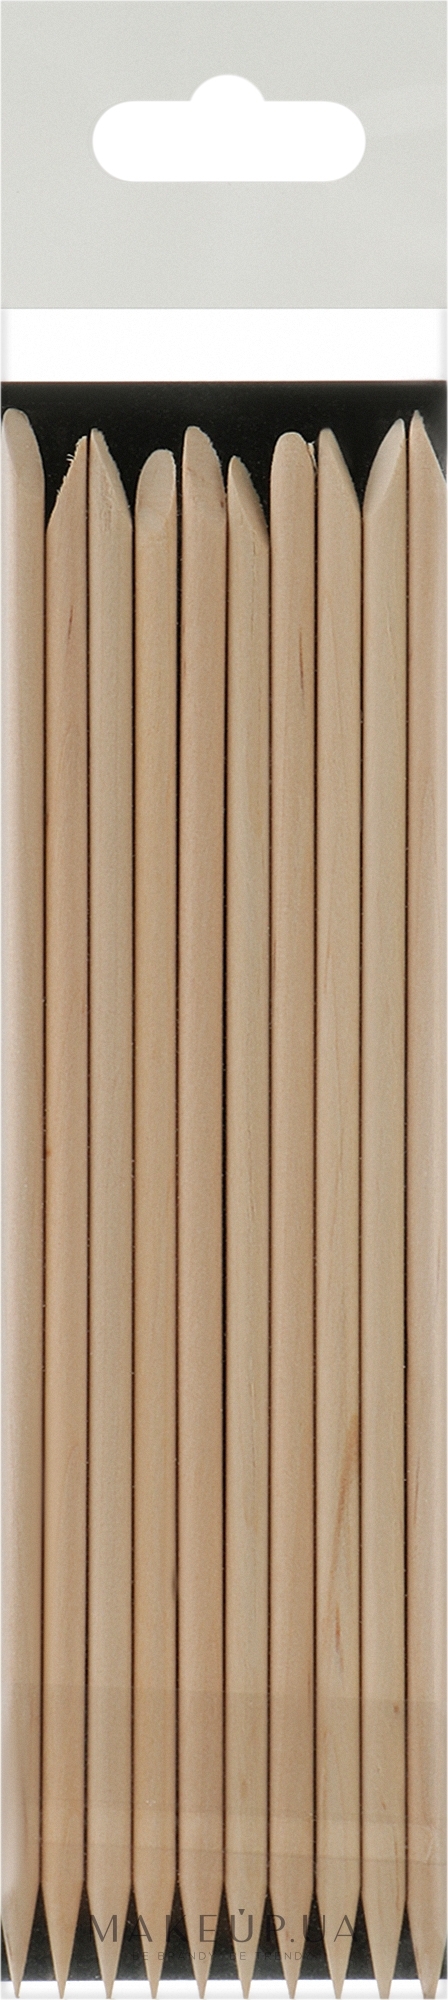 Апельсиновые палочки для маникюра, 150 мм - Staleks Pro Expert Wooden Orange Stick — фото 10шт